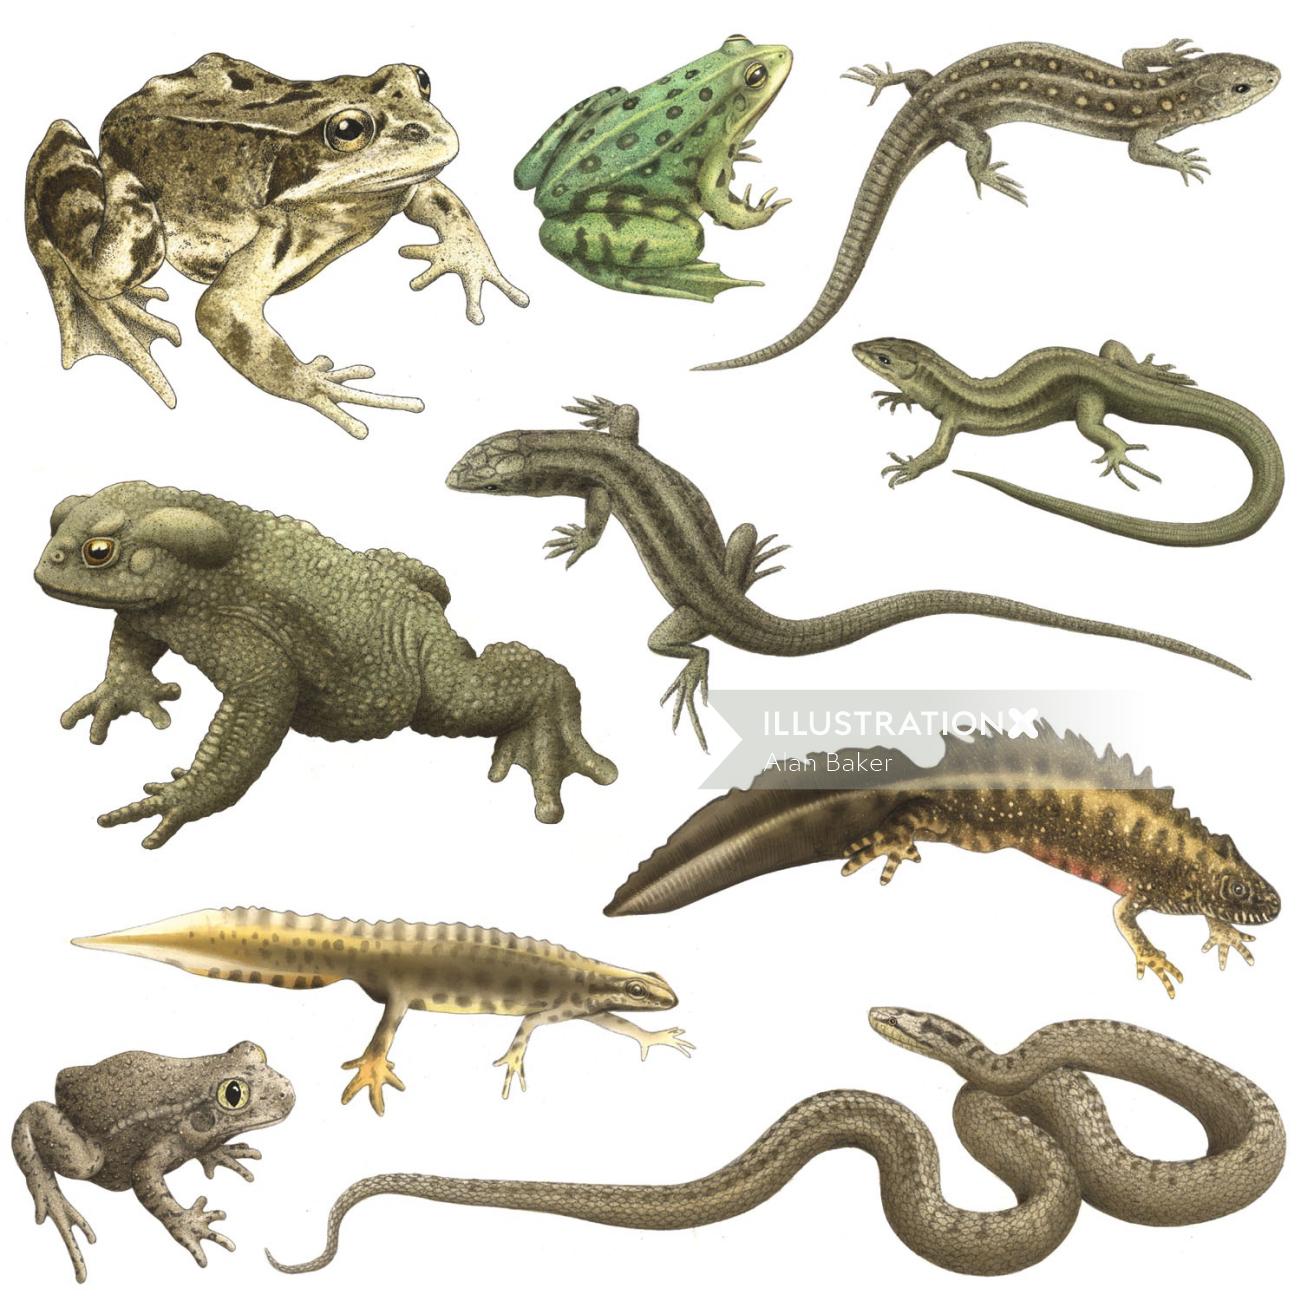 Illustration de reptiles par Alan Baker